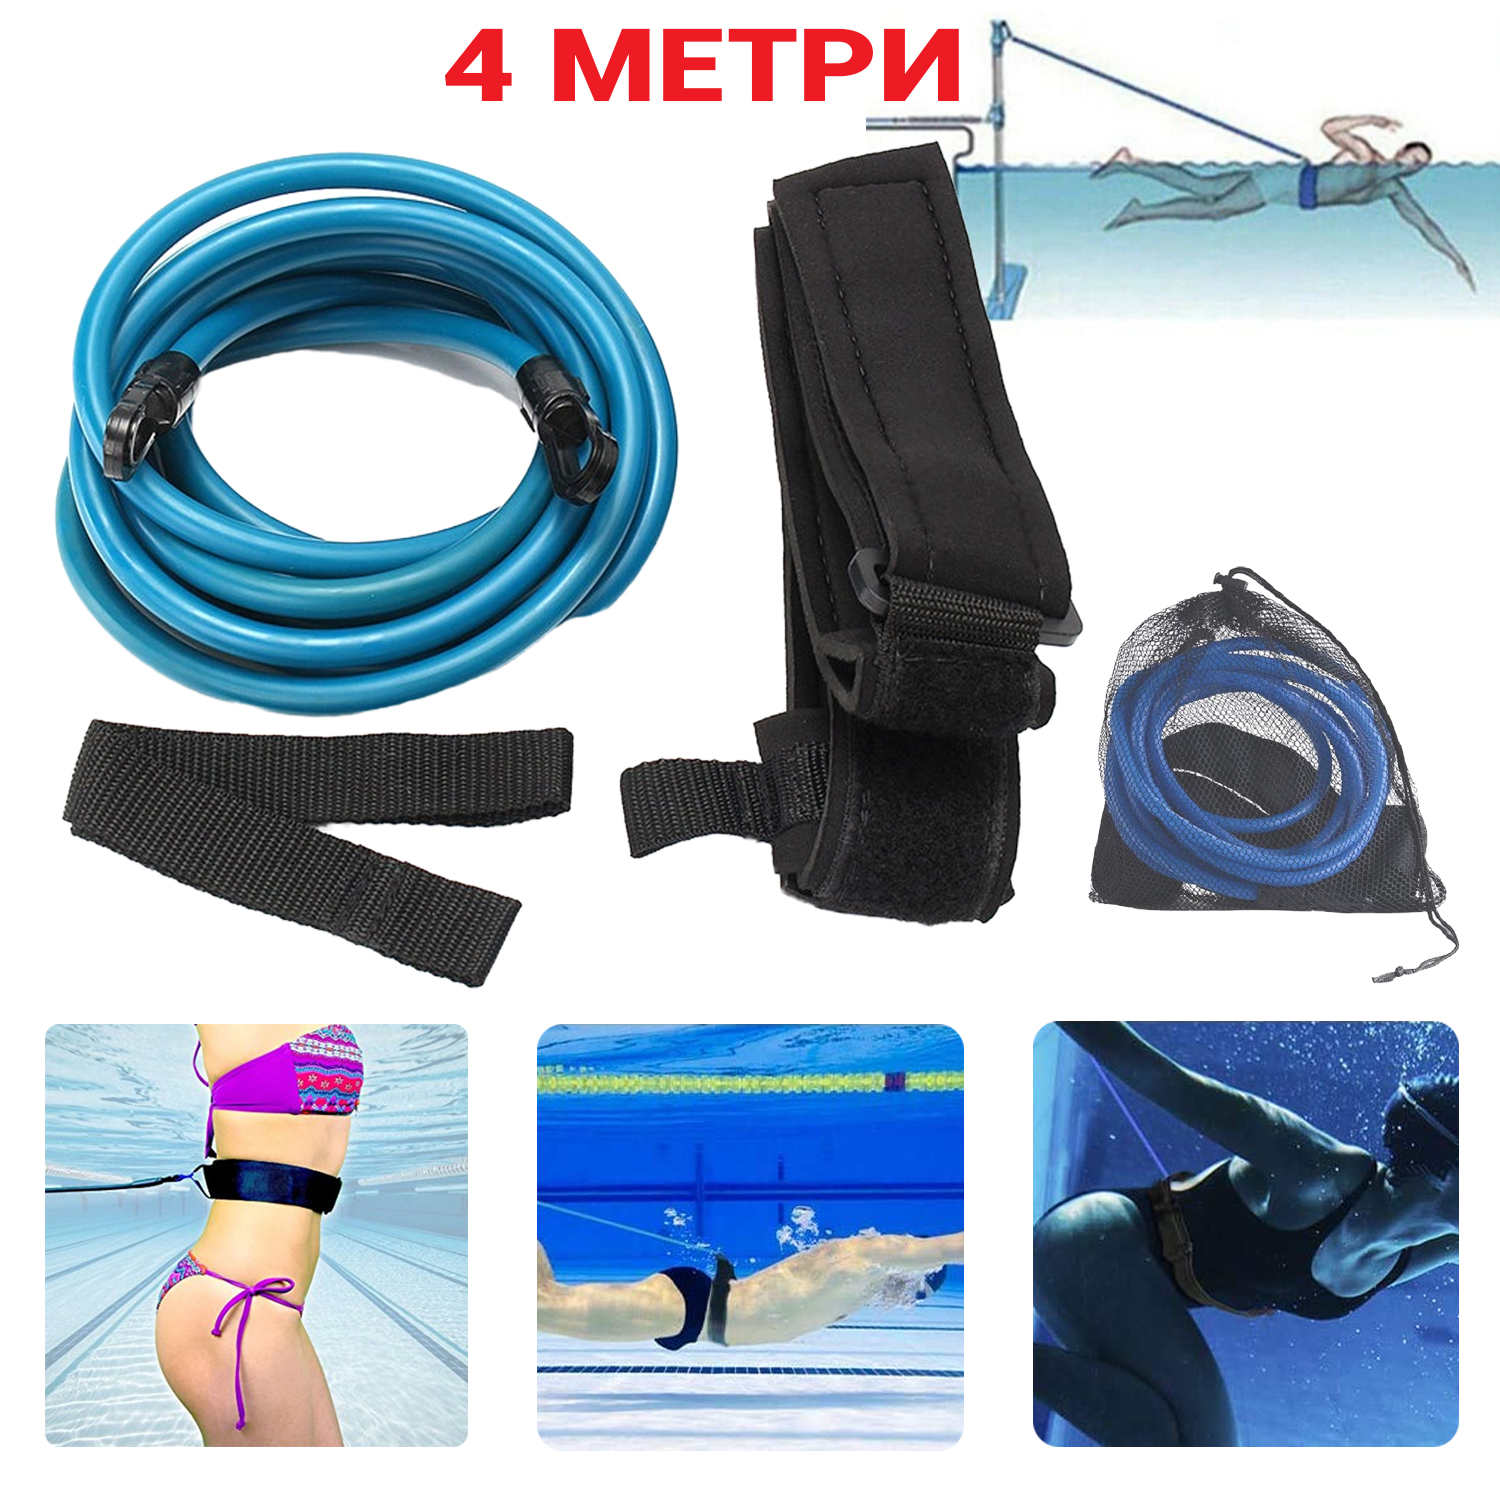 Belt For Training, Обучение плаванию